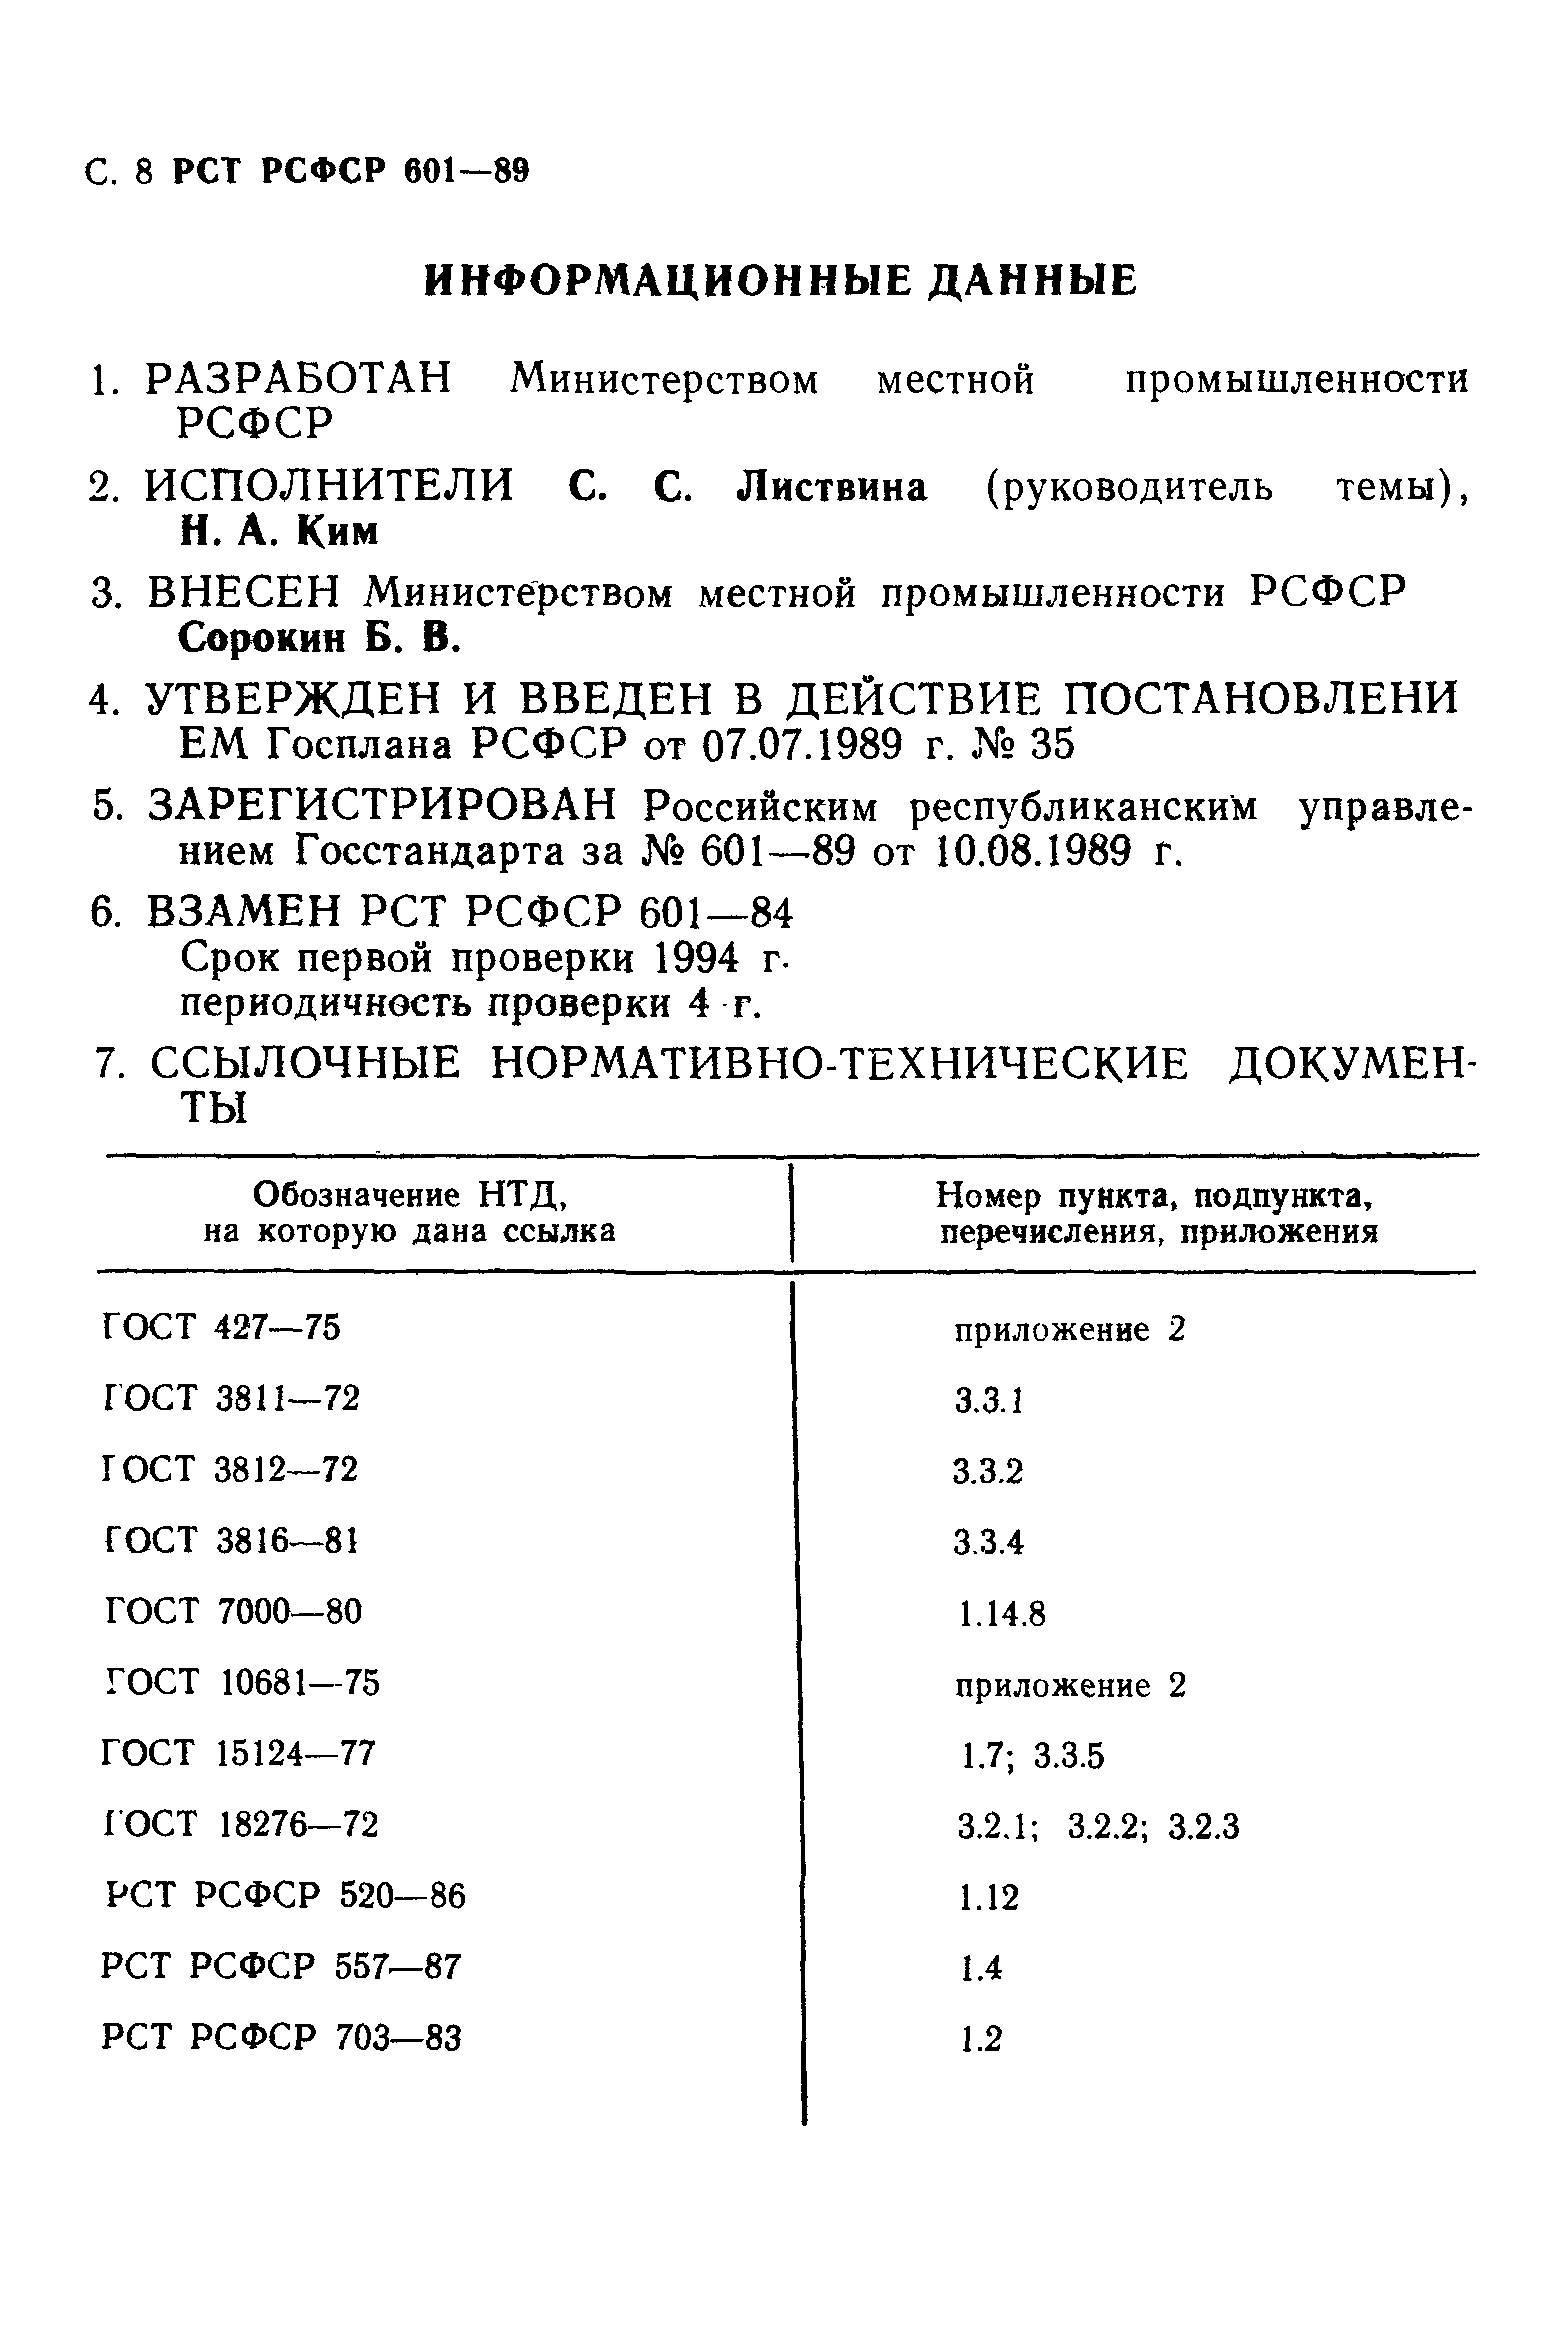 РСТ РСФСР 601-89